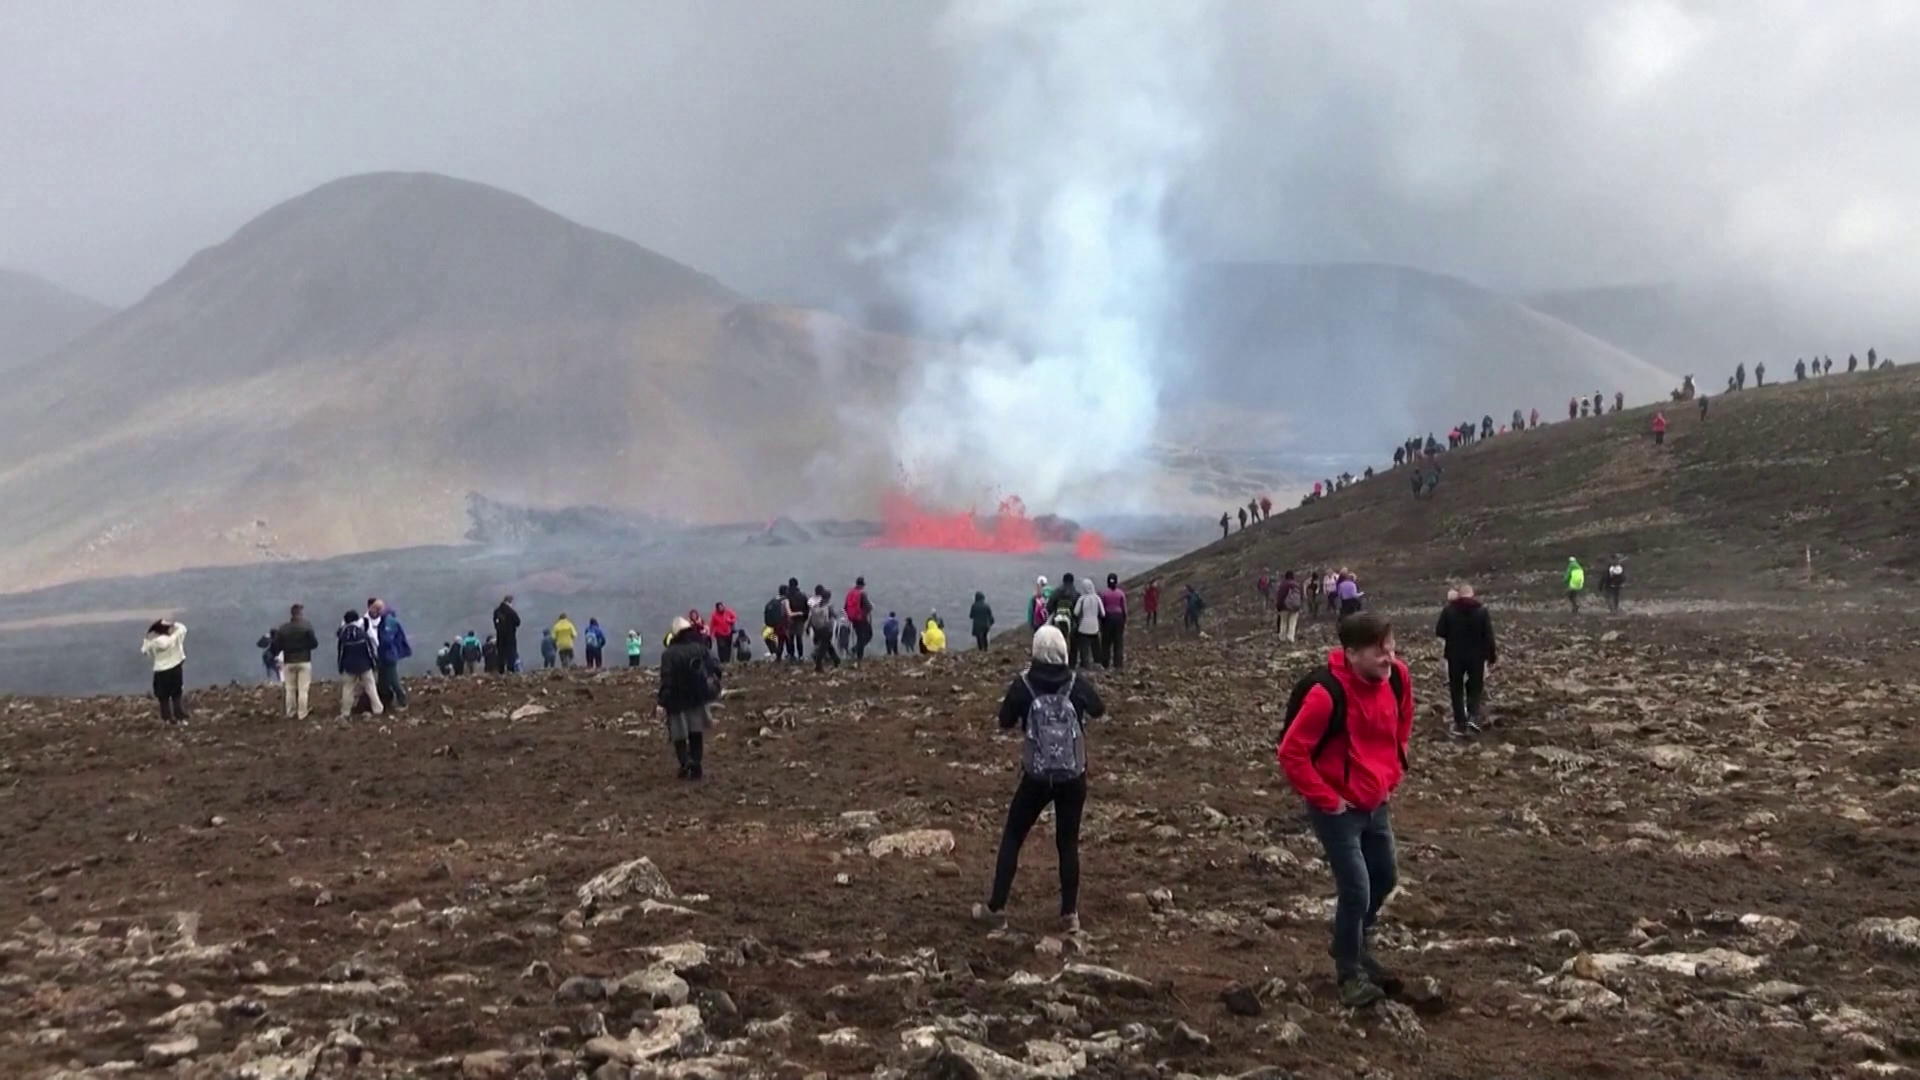 Ömlik a láva az Etnából, kitörni készül egy izlandi vulkán + videó